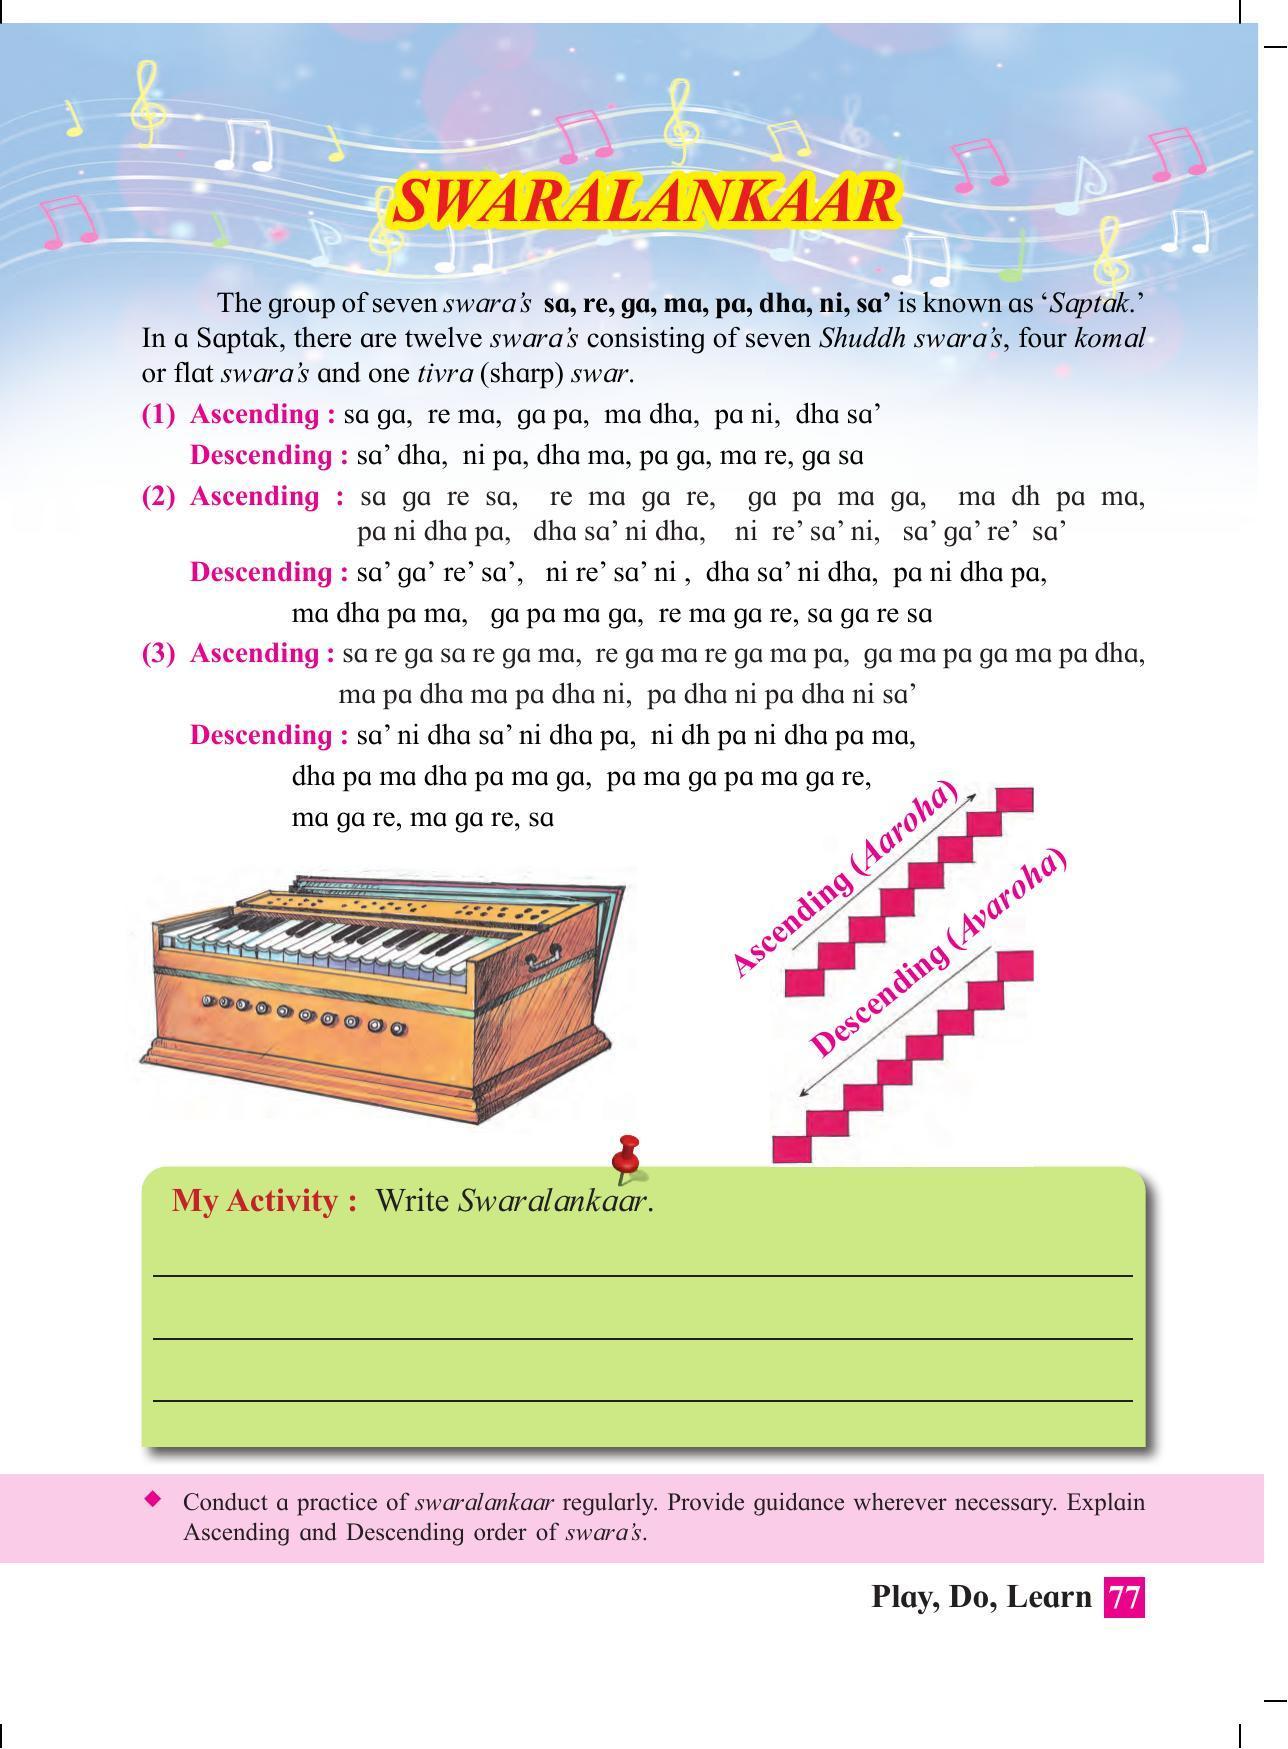 Maharashtra Board Class 4 Play Do Learn (English Medium) Textbook - Page 86